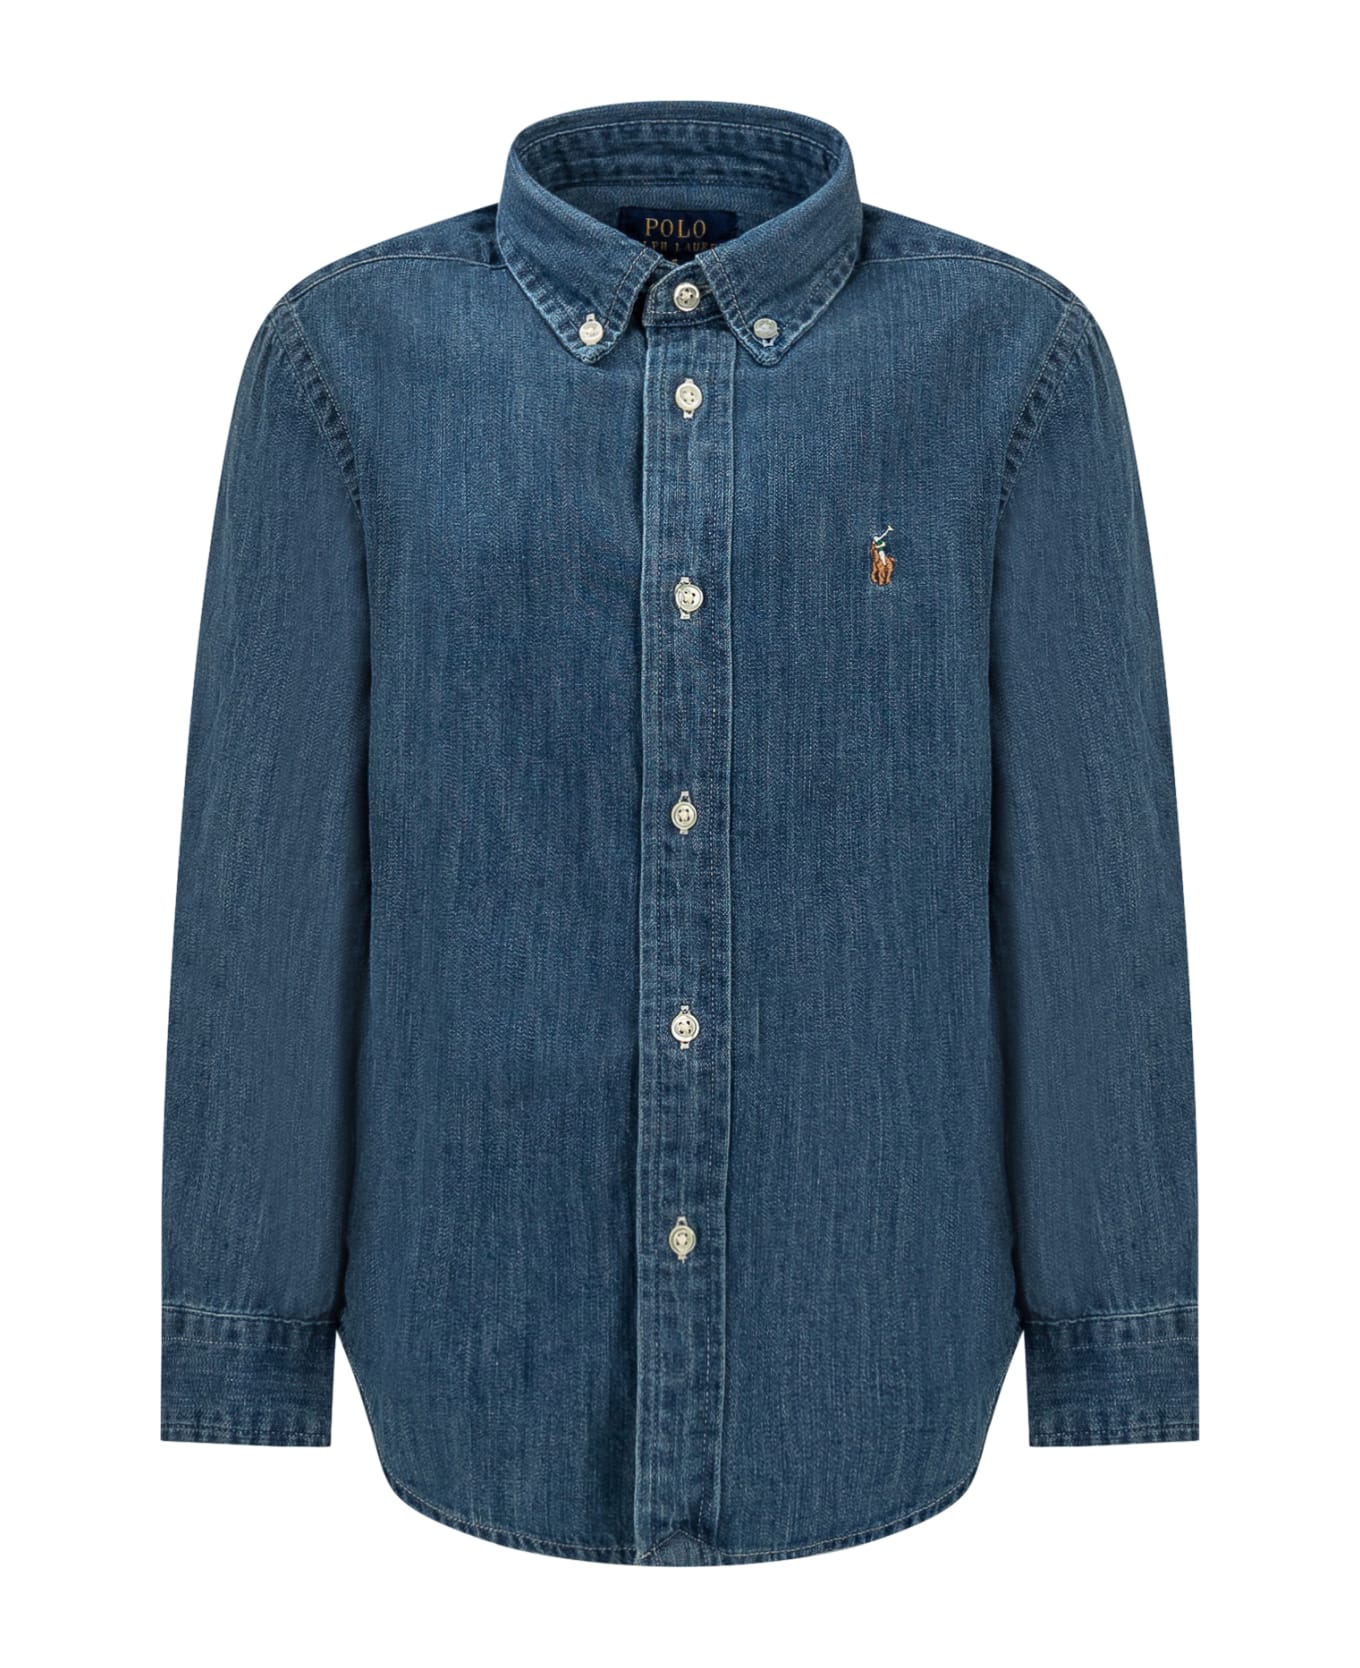 Polo Ralph Lauren Denim Shirt - DK BLUE シャツ